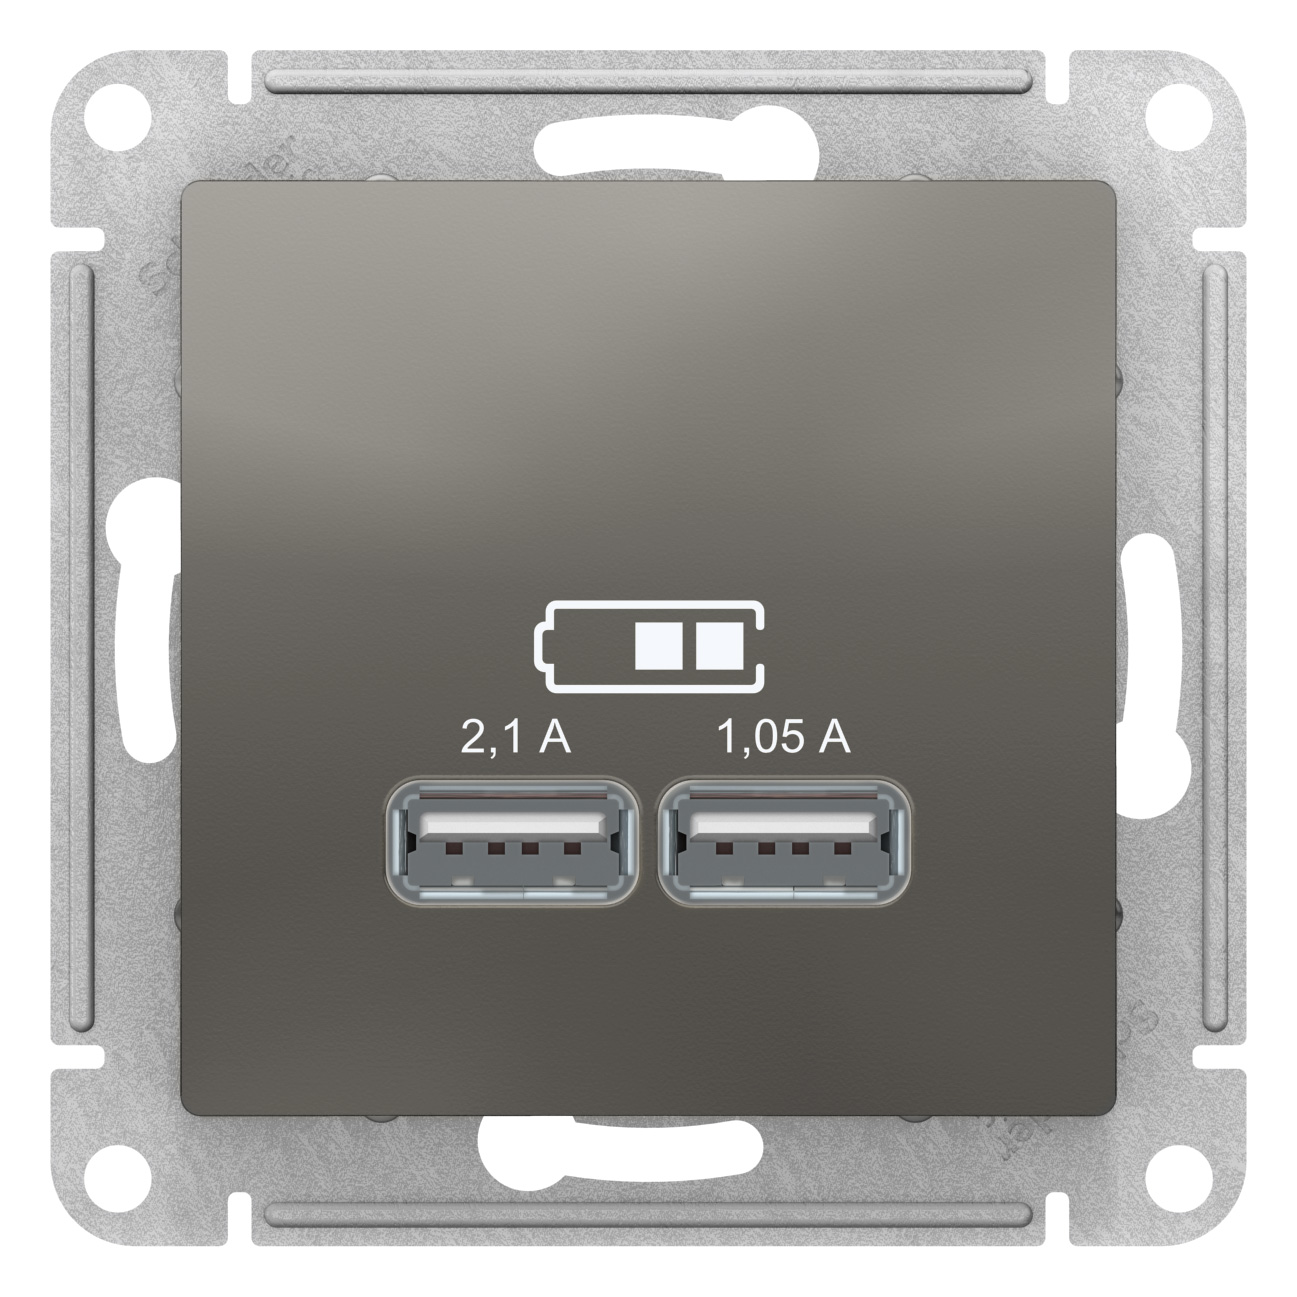 SE AtlasDesign Сталь Розетка USB, 5В, 1 порт x 2,1 А, 2 порта х 1,05 А, механизм